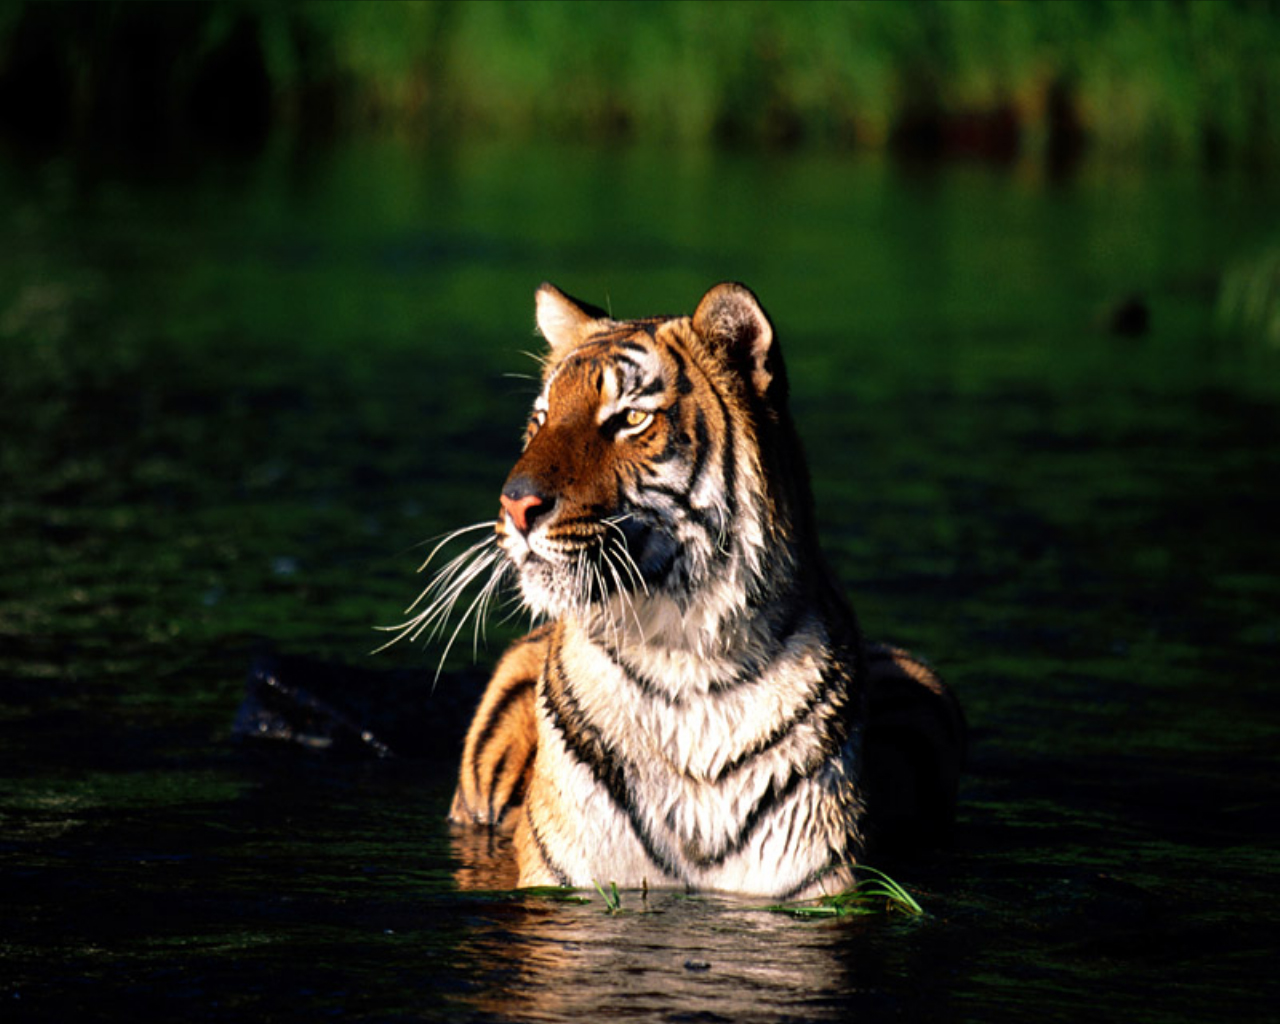 Tiger26